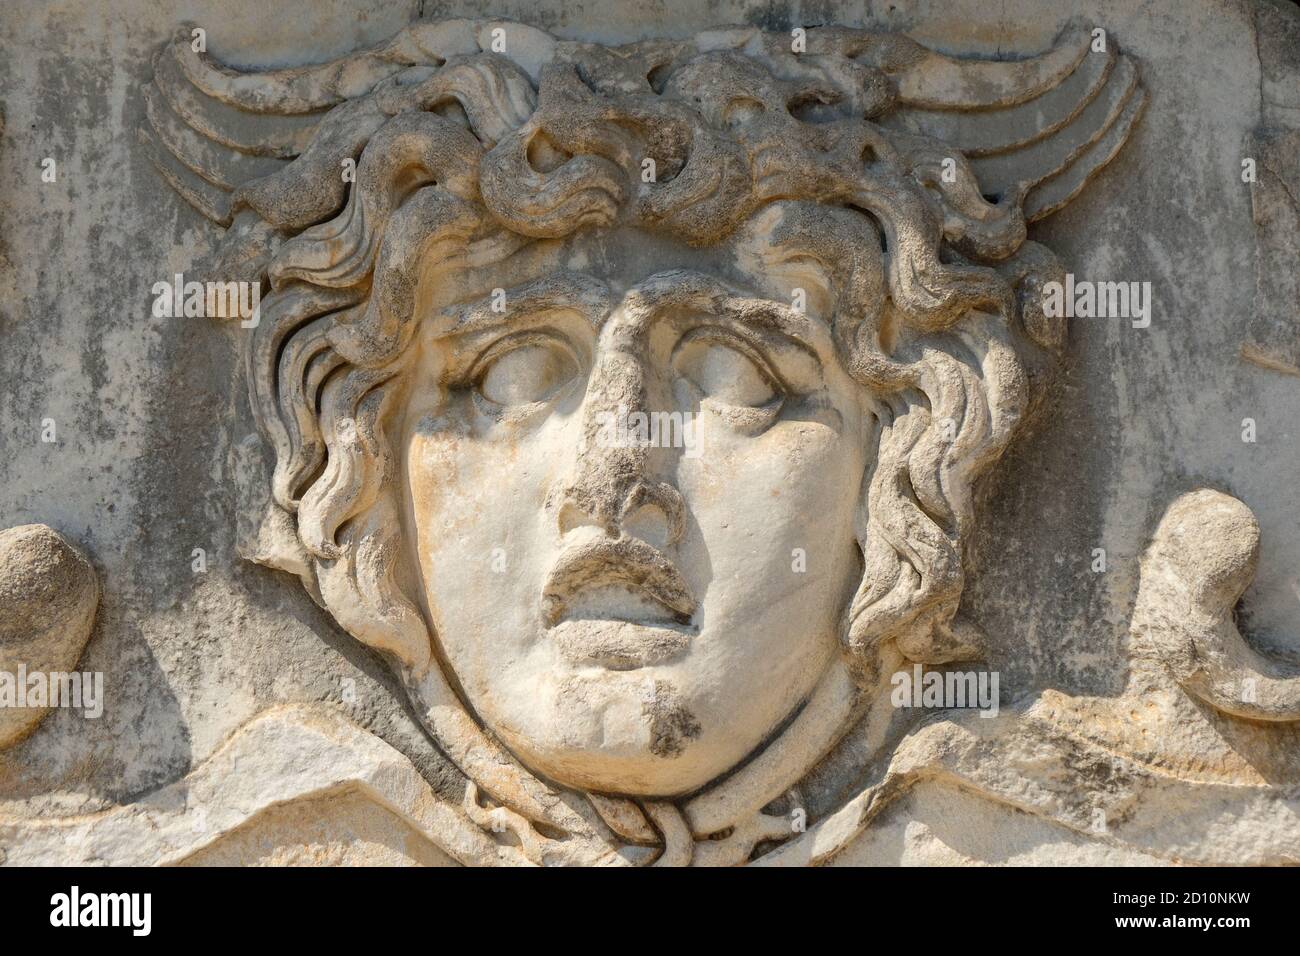 Visage d'homme - relief grec ancien - sculpture murale - Temple d'Apollon Banque D'Images